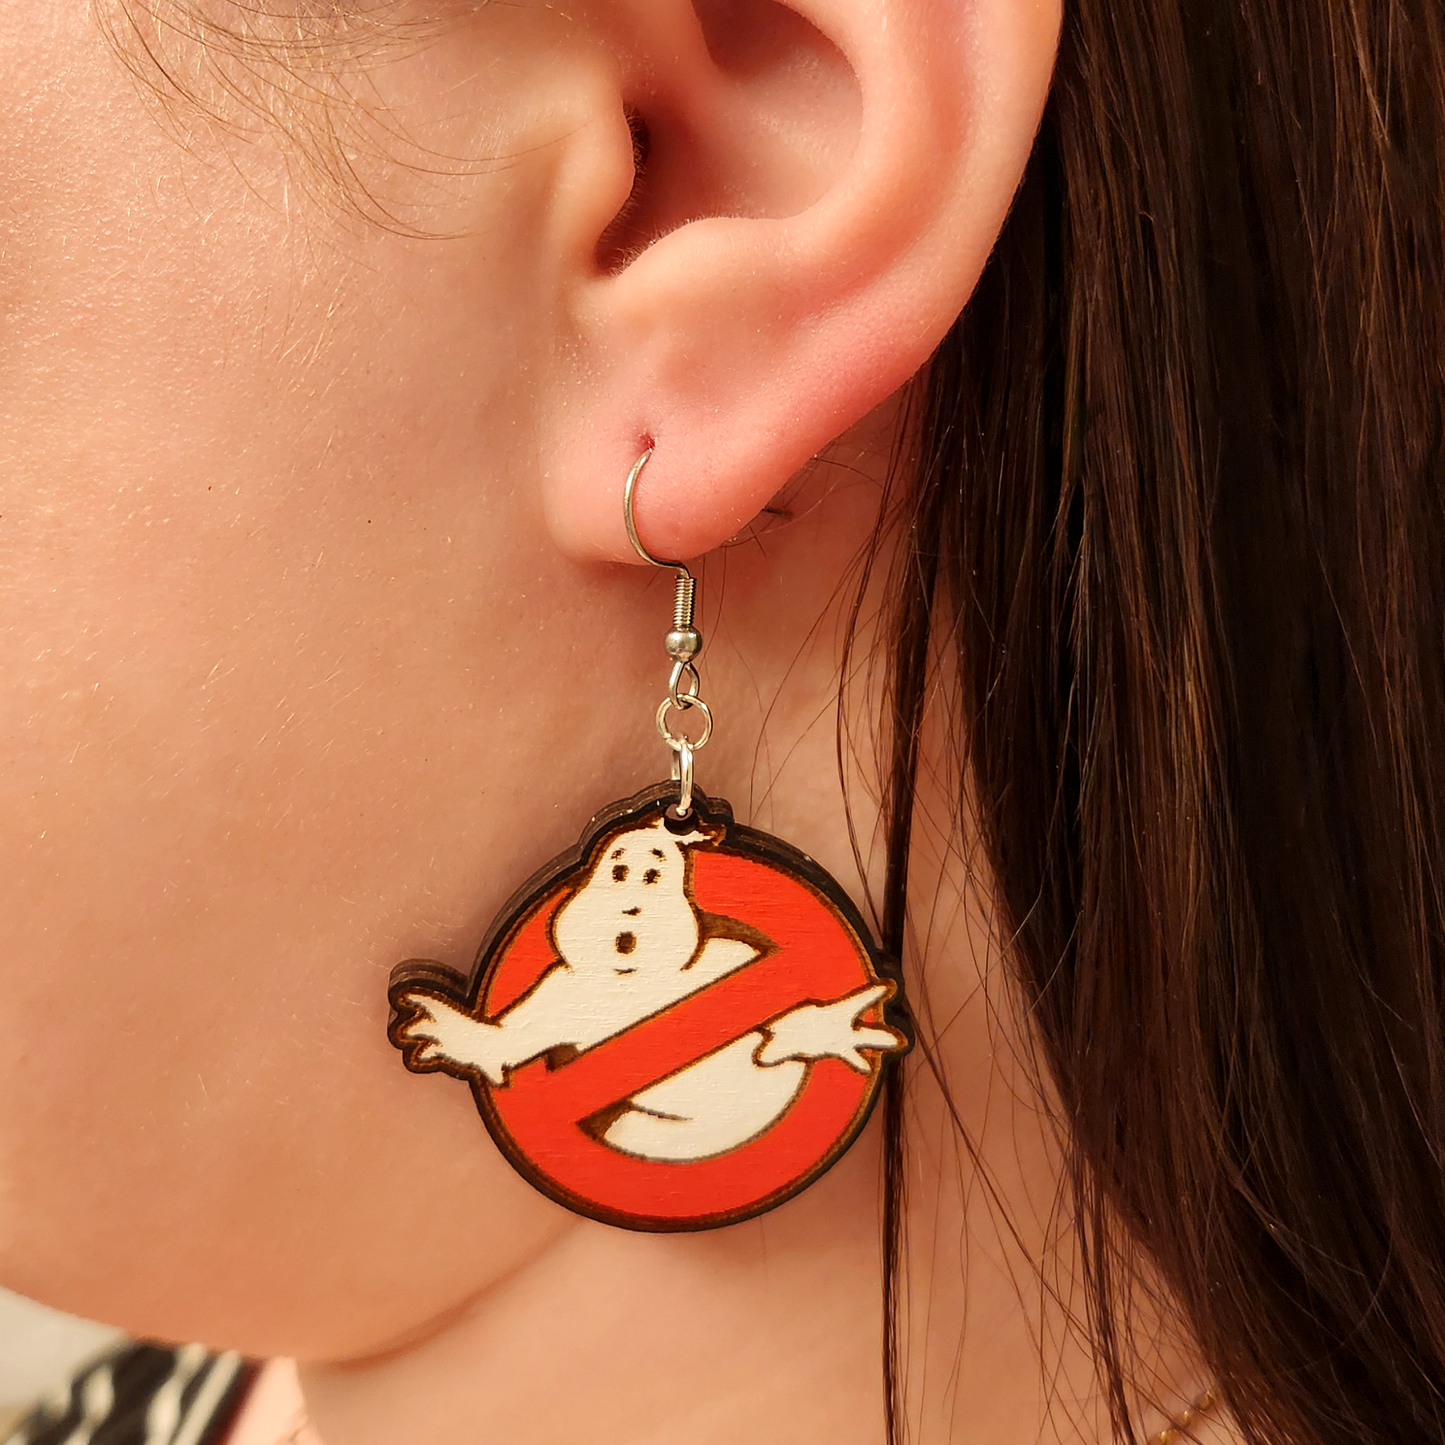 woman wearing ghostbusters earrings